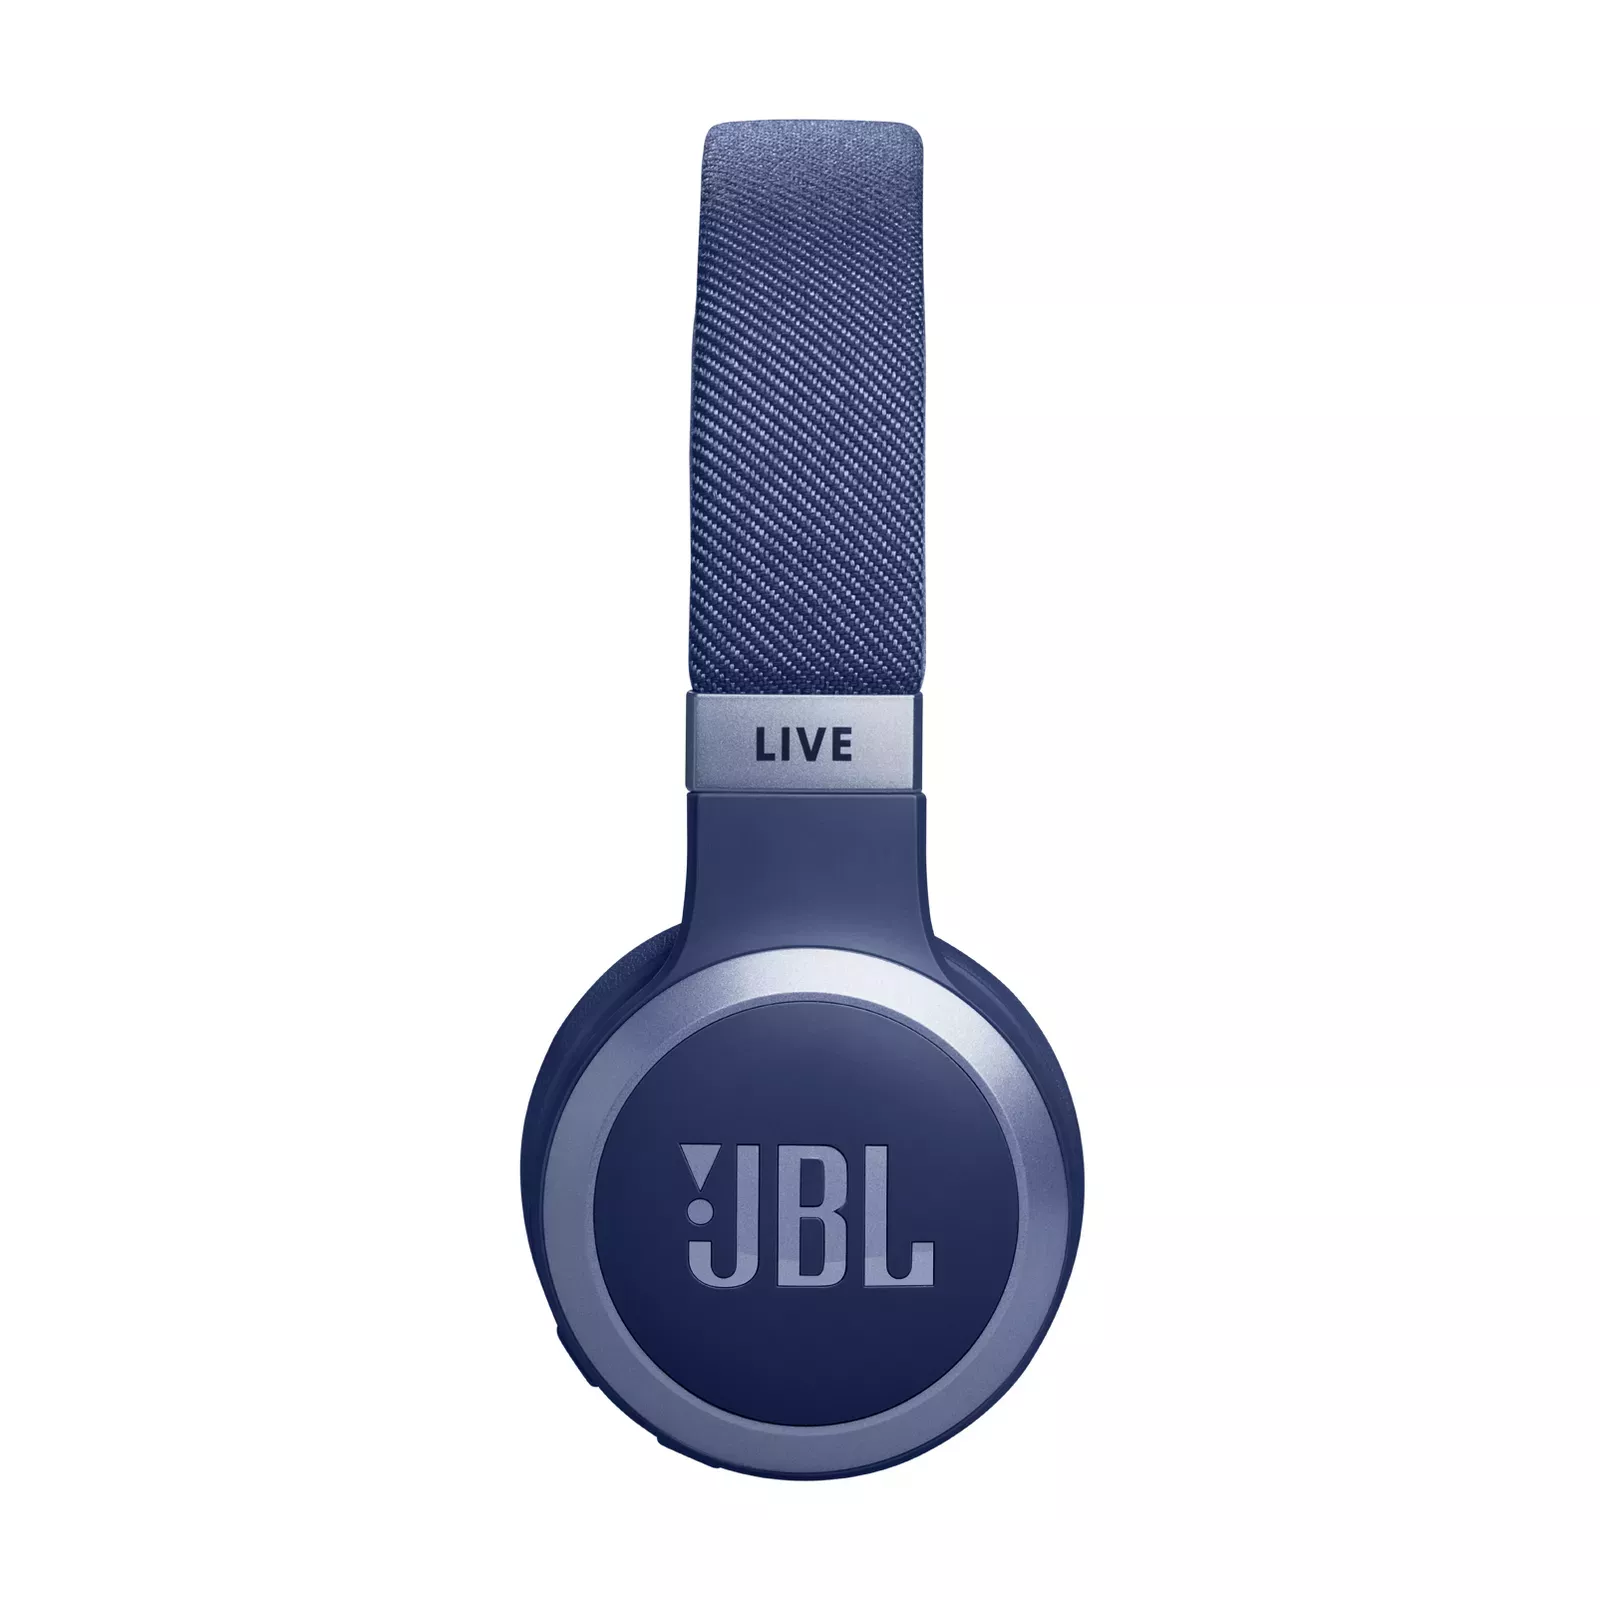 JBLLIVE670NCBLU JBL 670NC Live